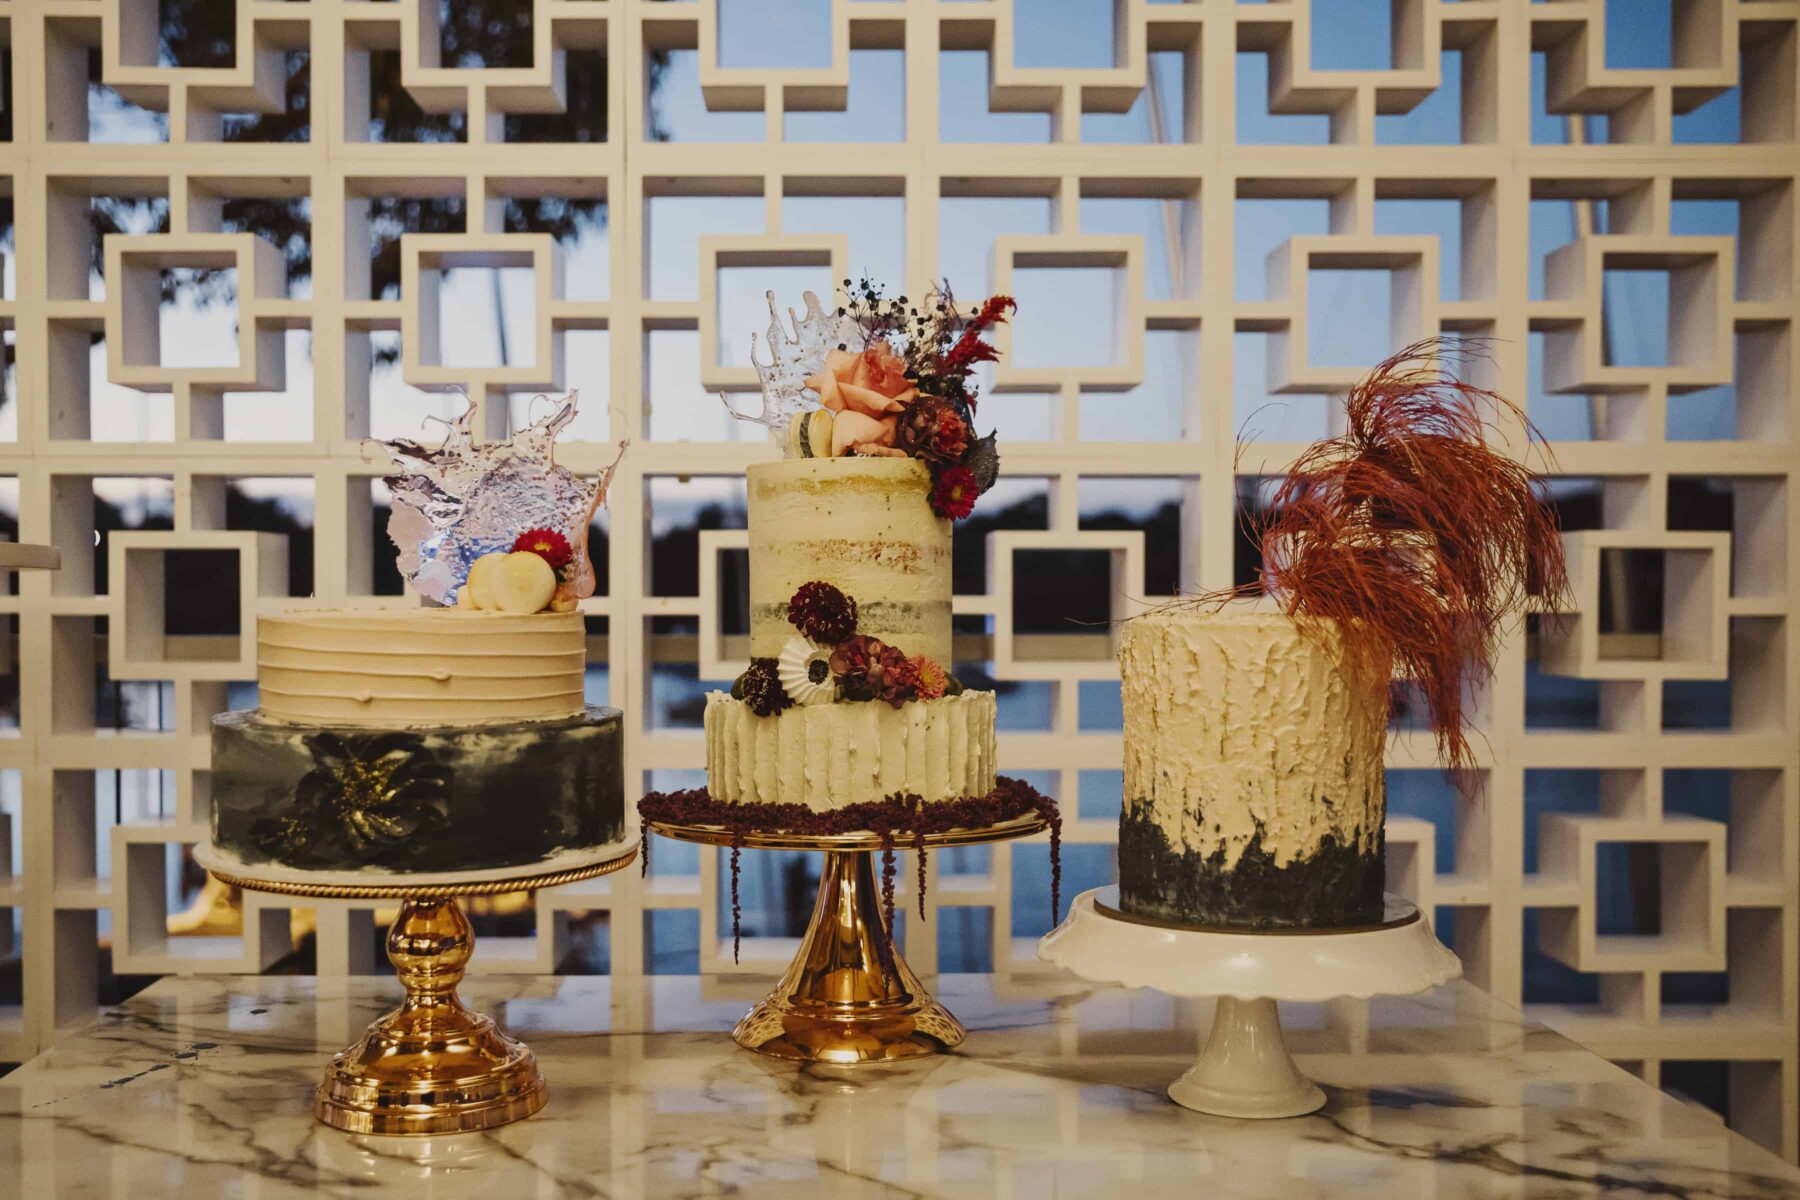 trio of creative wedding cakes